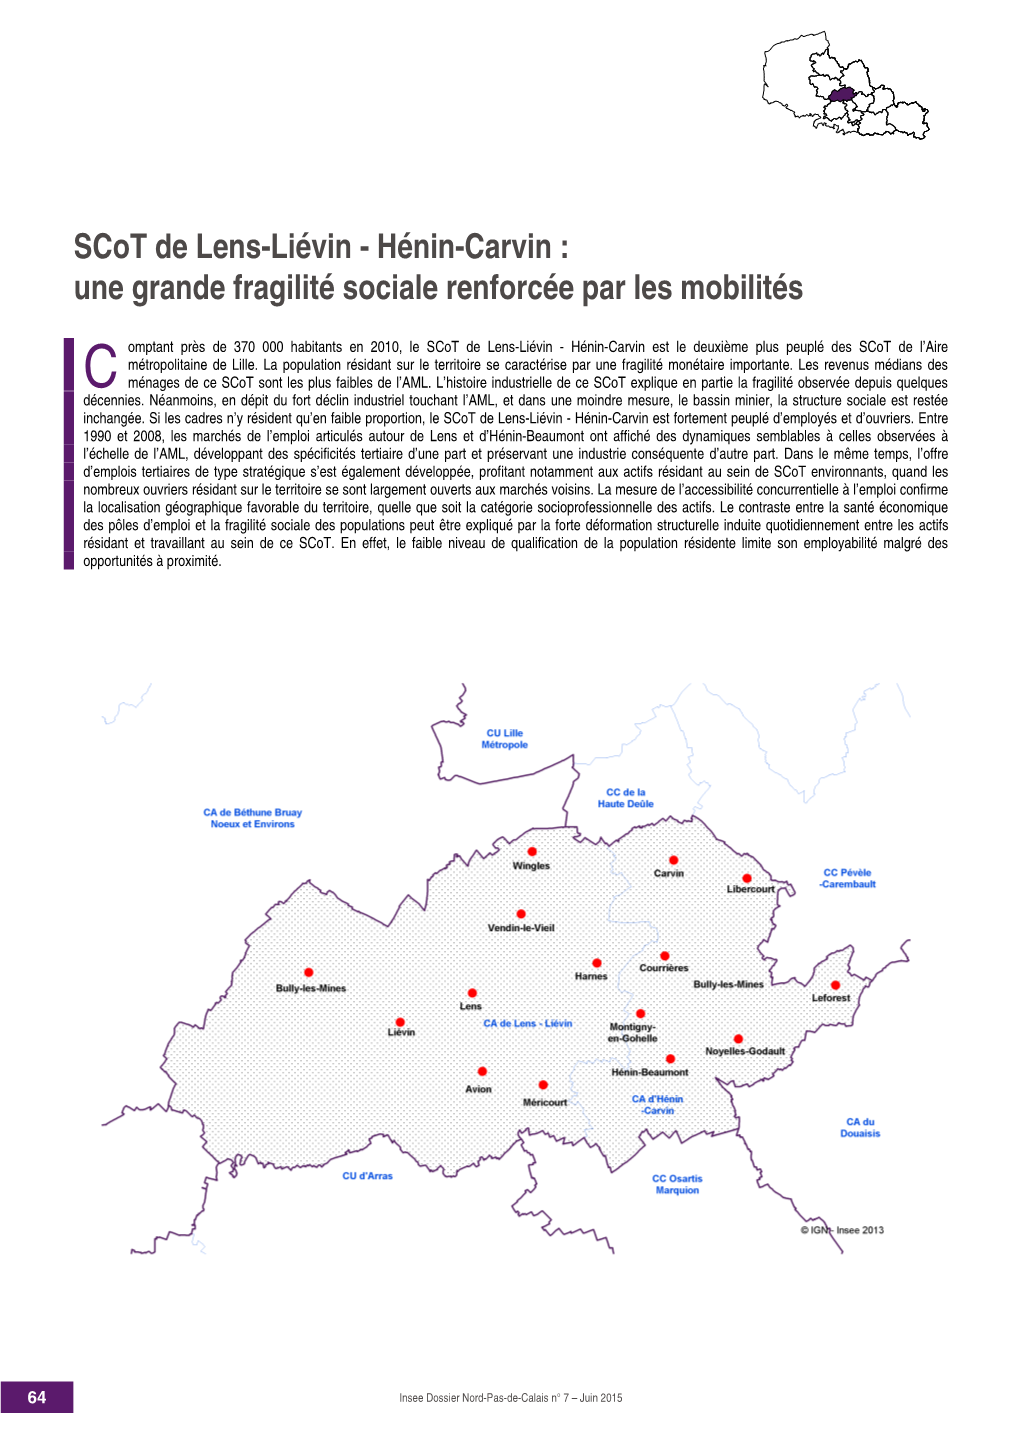 Scot De Lens-Liévin - Hénin-Carvin : Une Grande Fragilité Sociale Renforcée Par Les Mobilités